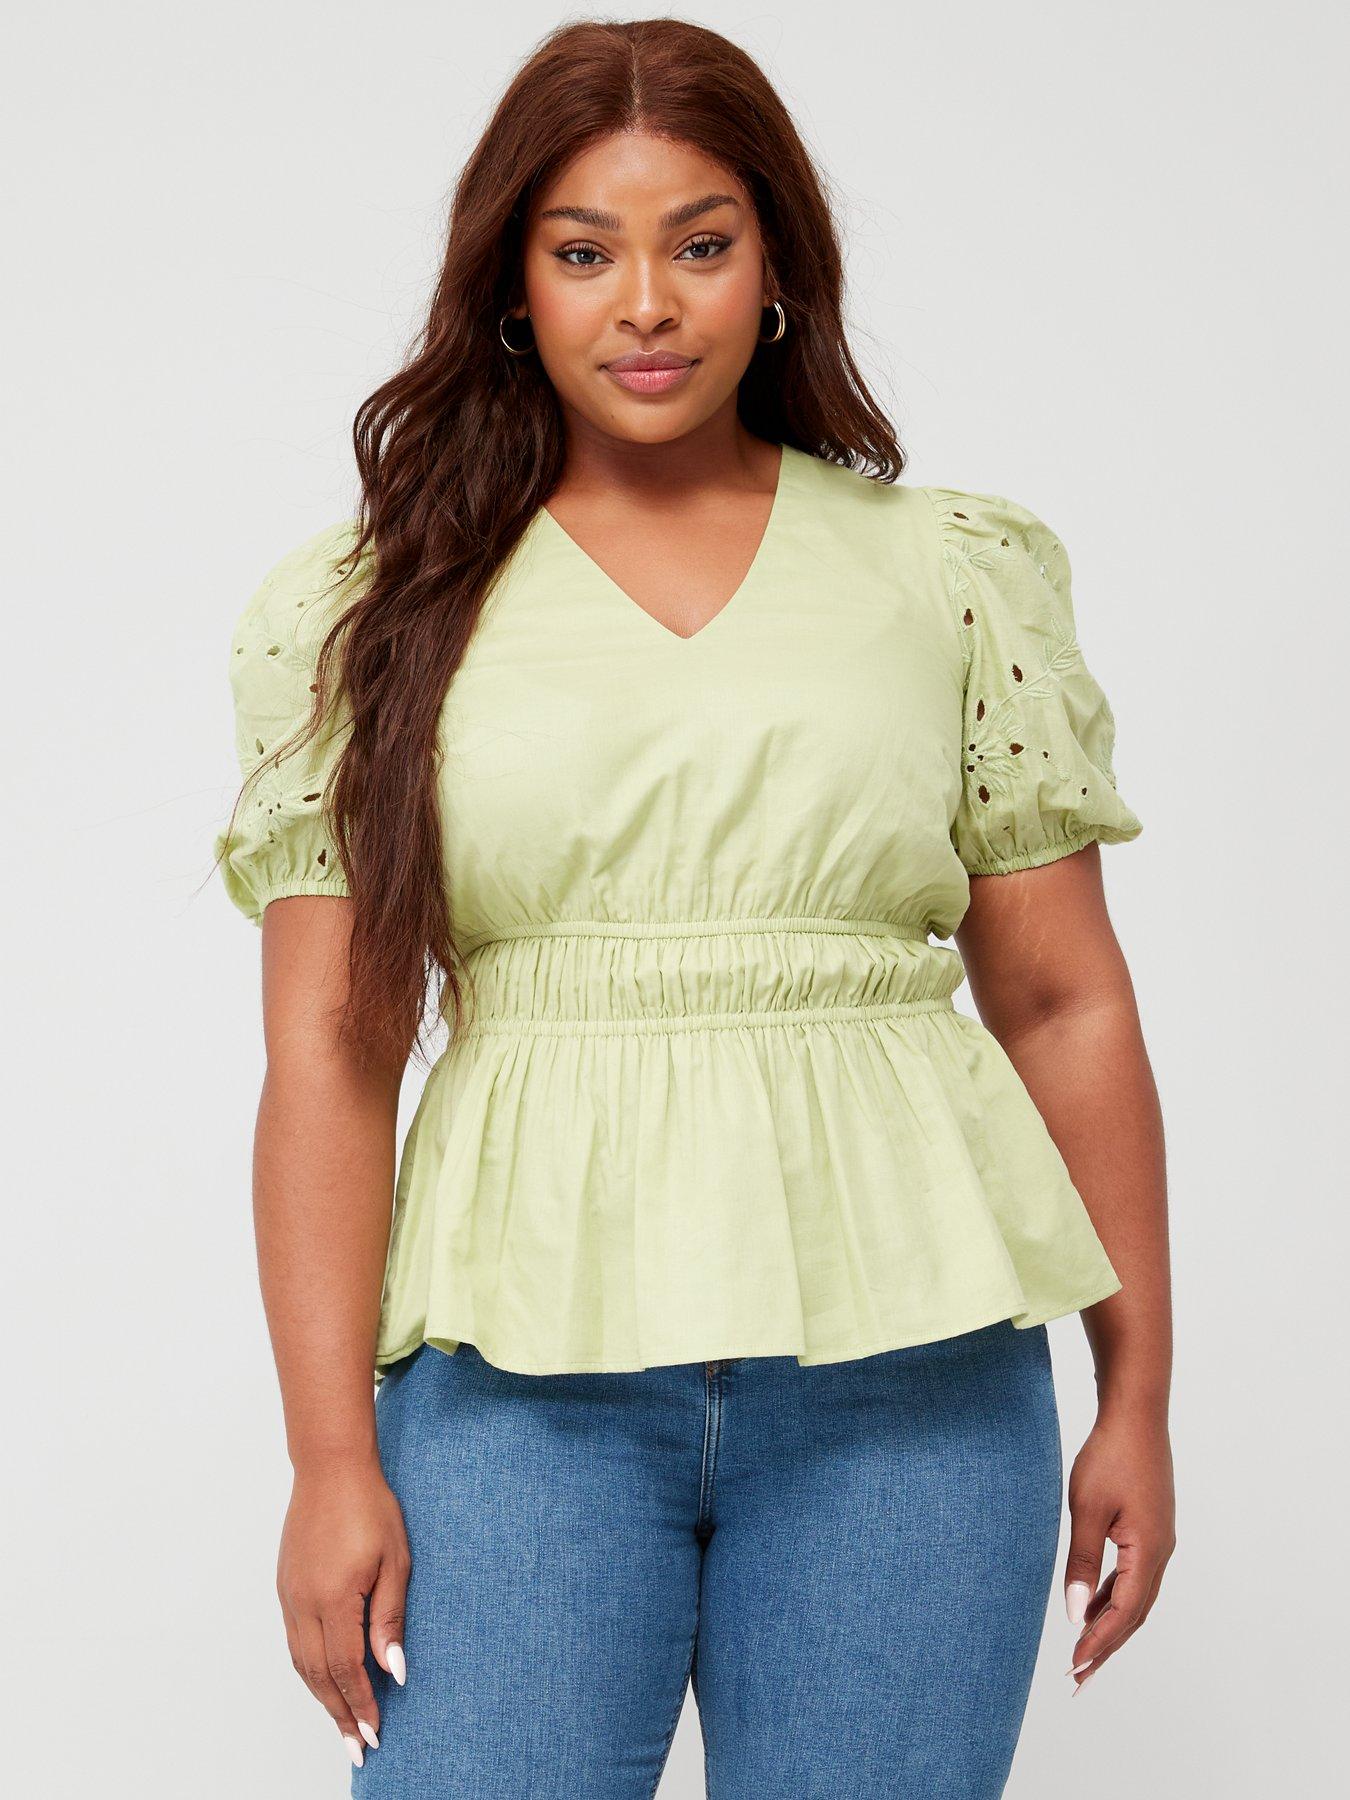 Green Shirts for Women, Shop Blouses, Shirts & Tops